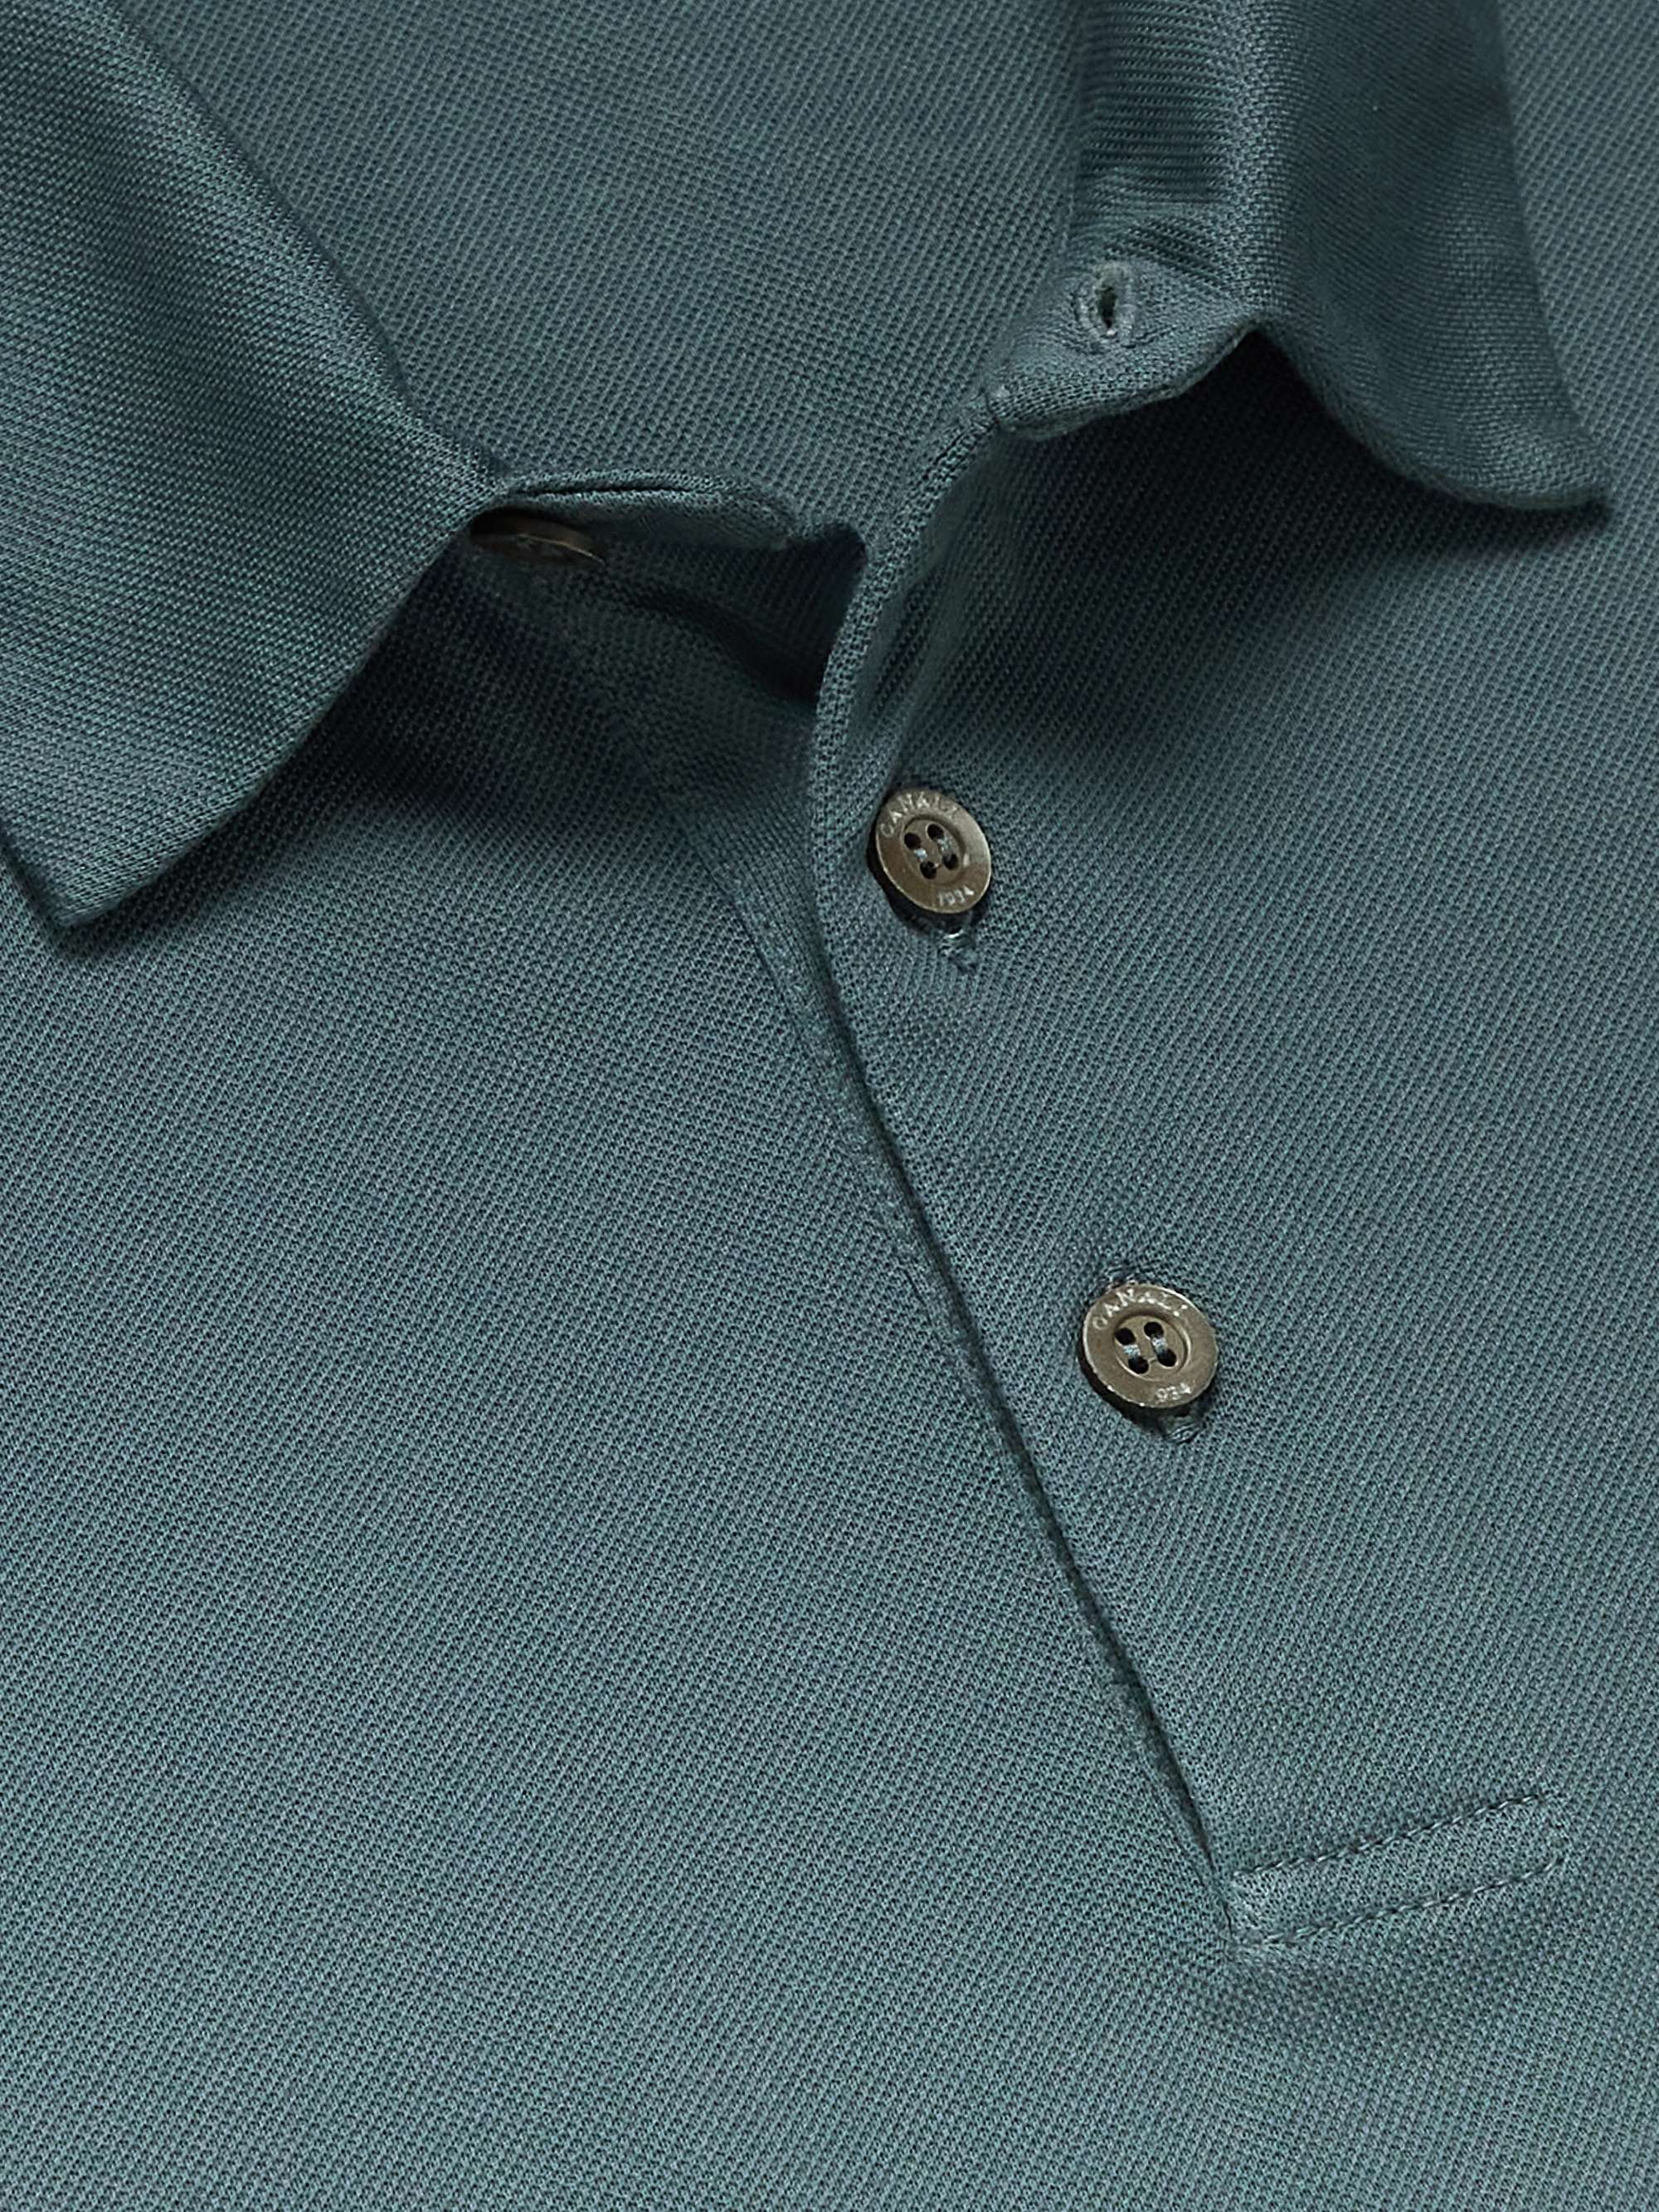 CANALI Cotton-Piqué Polo Shirt